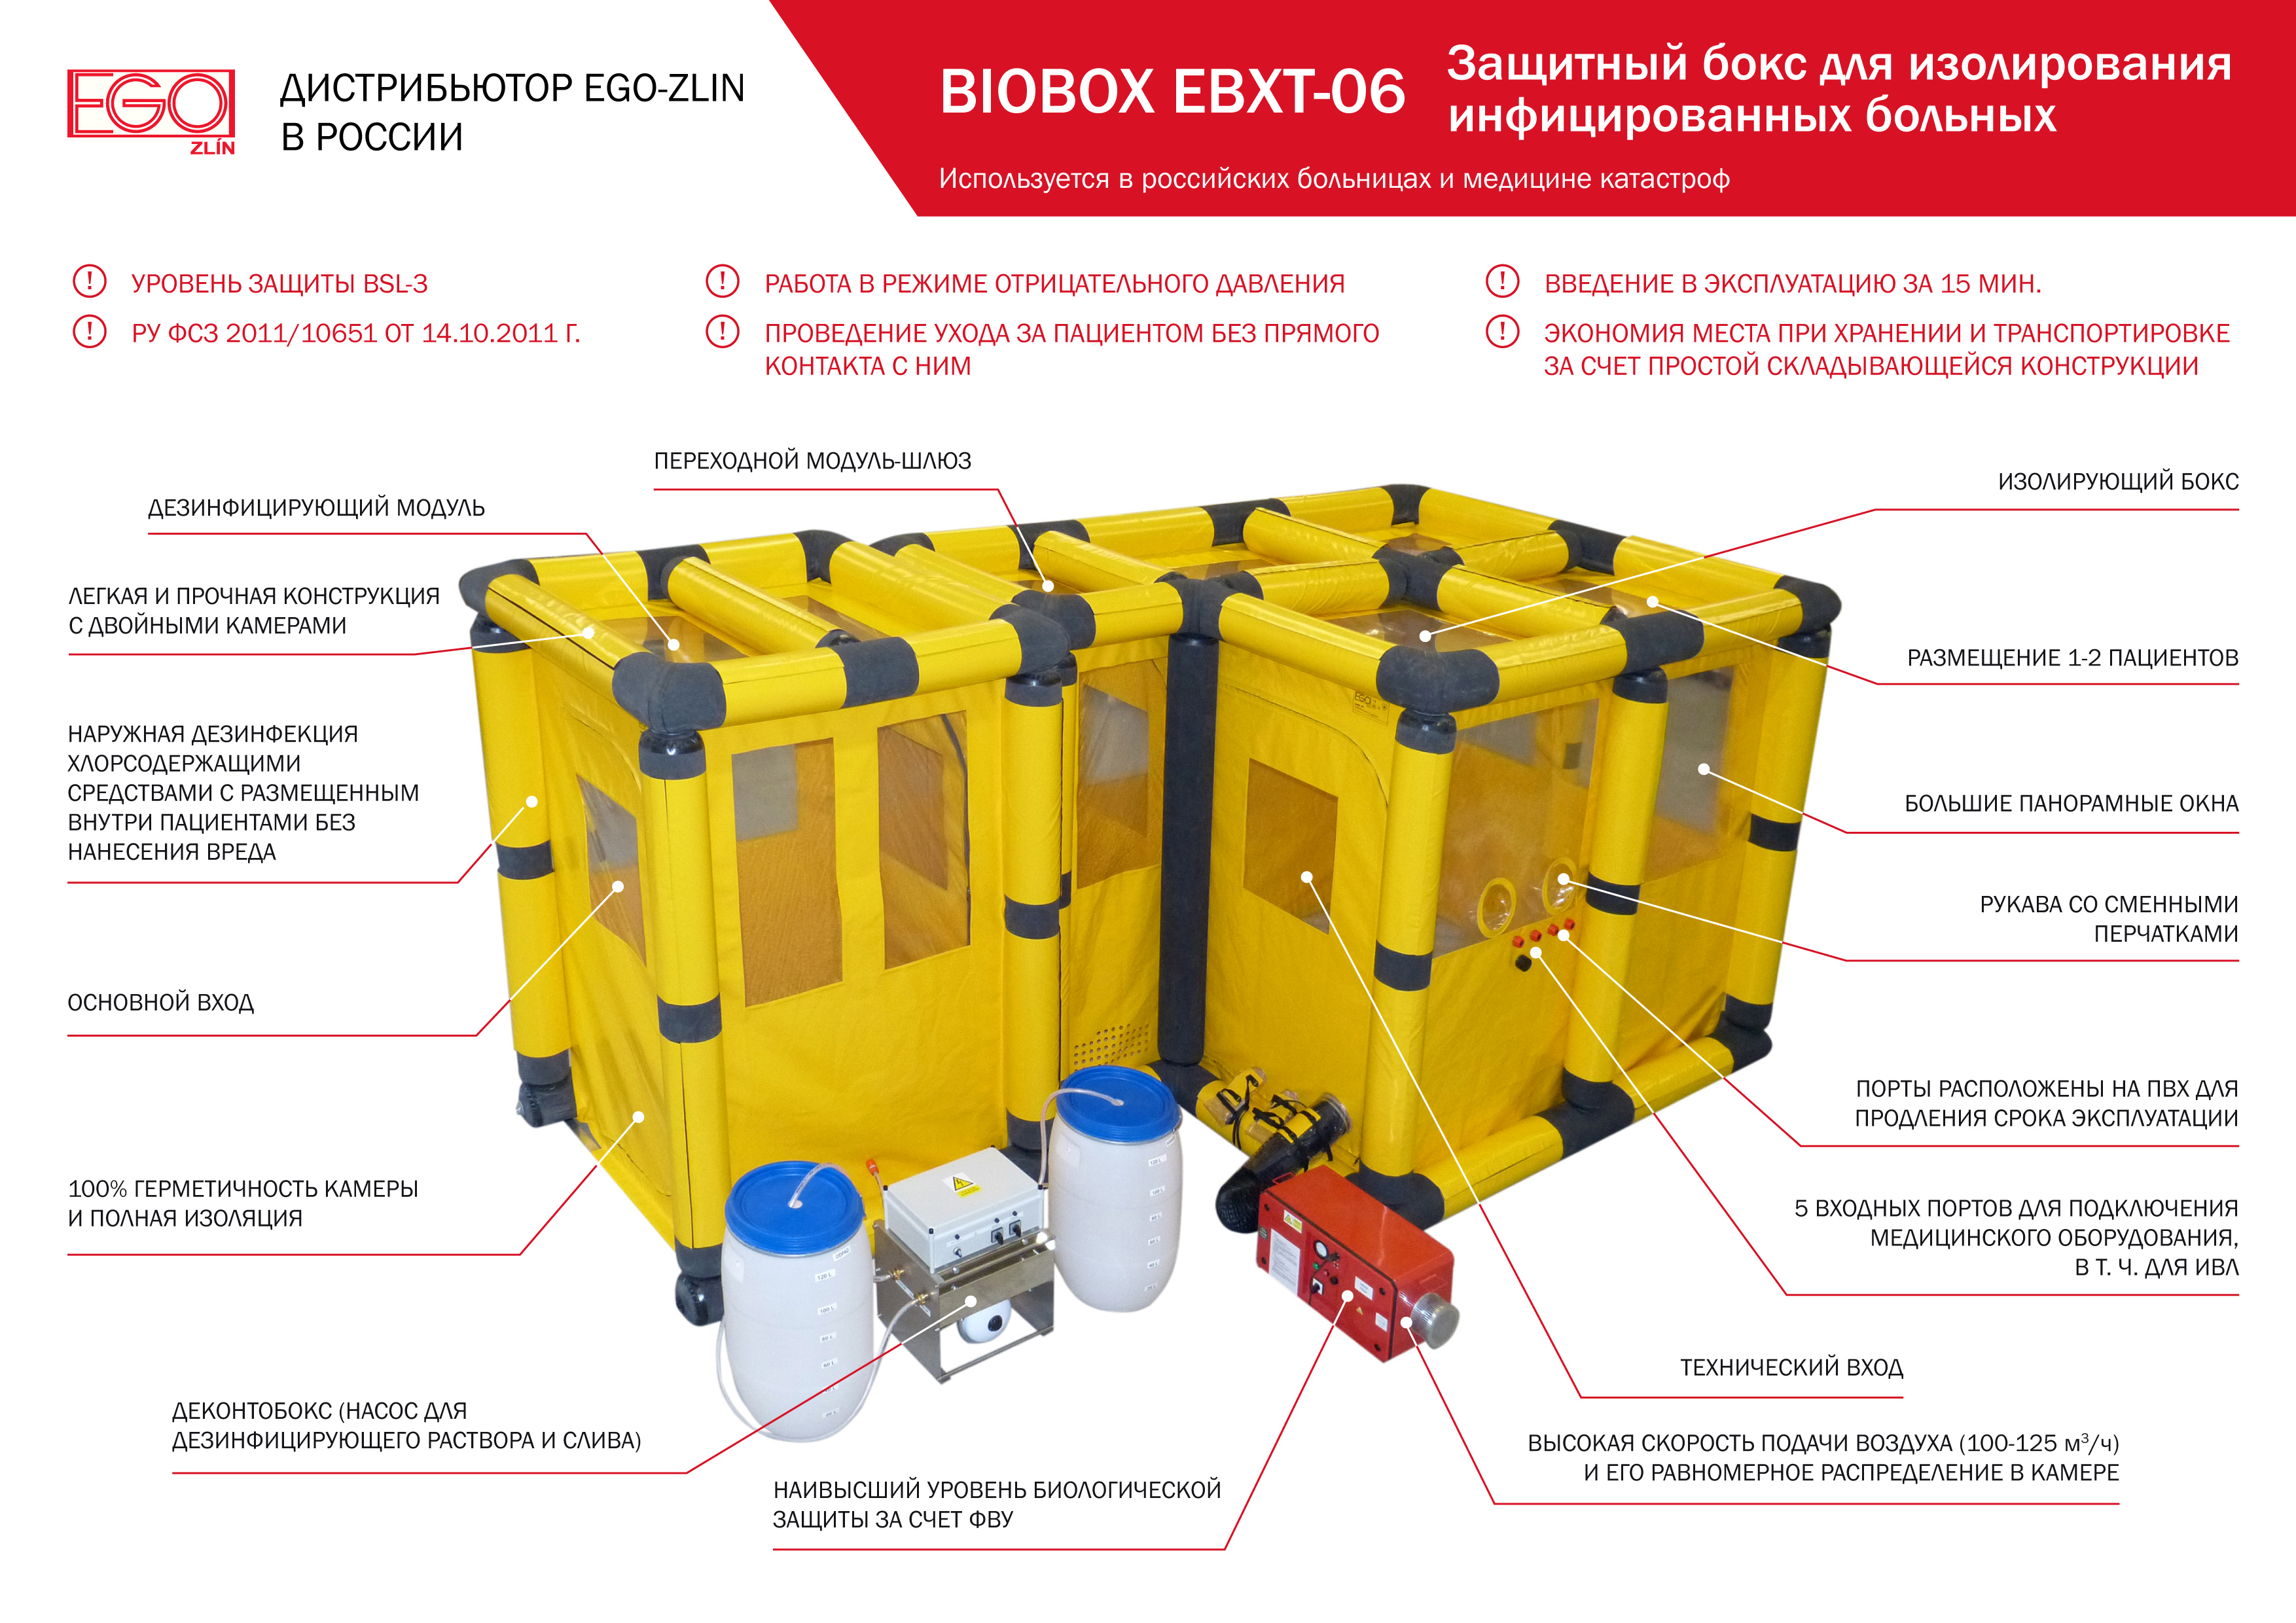 Тетис МС, Тетис Медицинские Системы, BIOBOX EBXT-06 Защитный бокс для изолирования инфицированных больных 